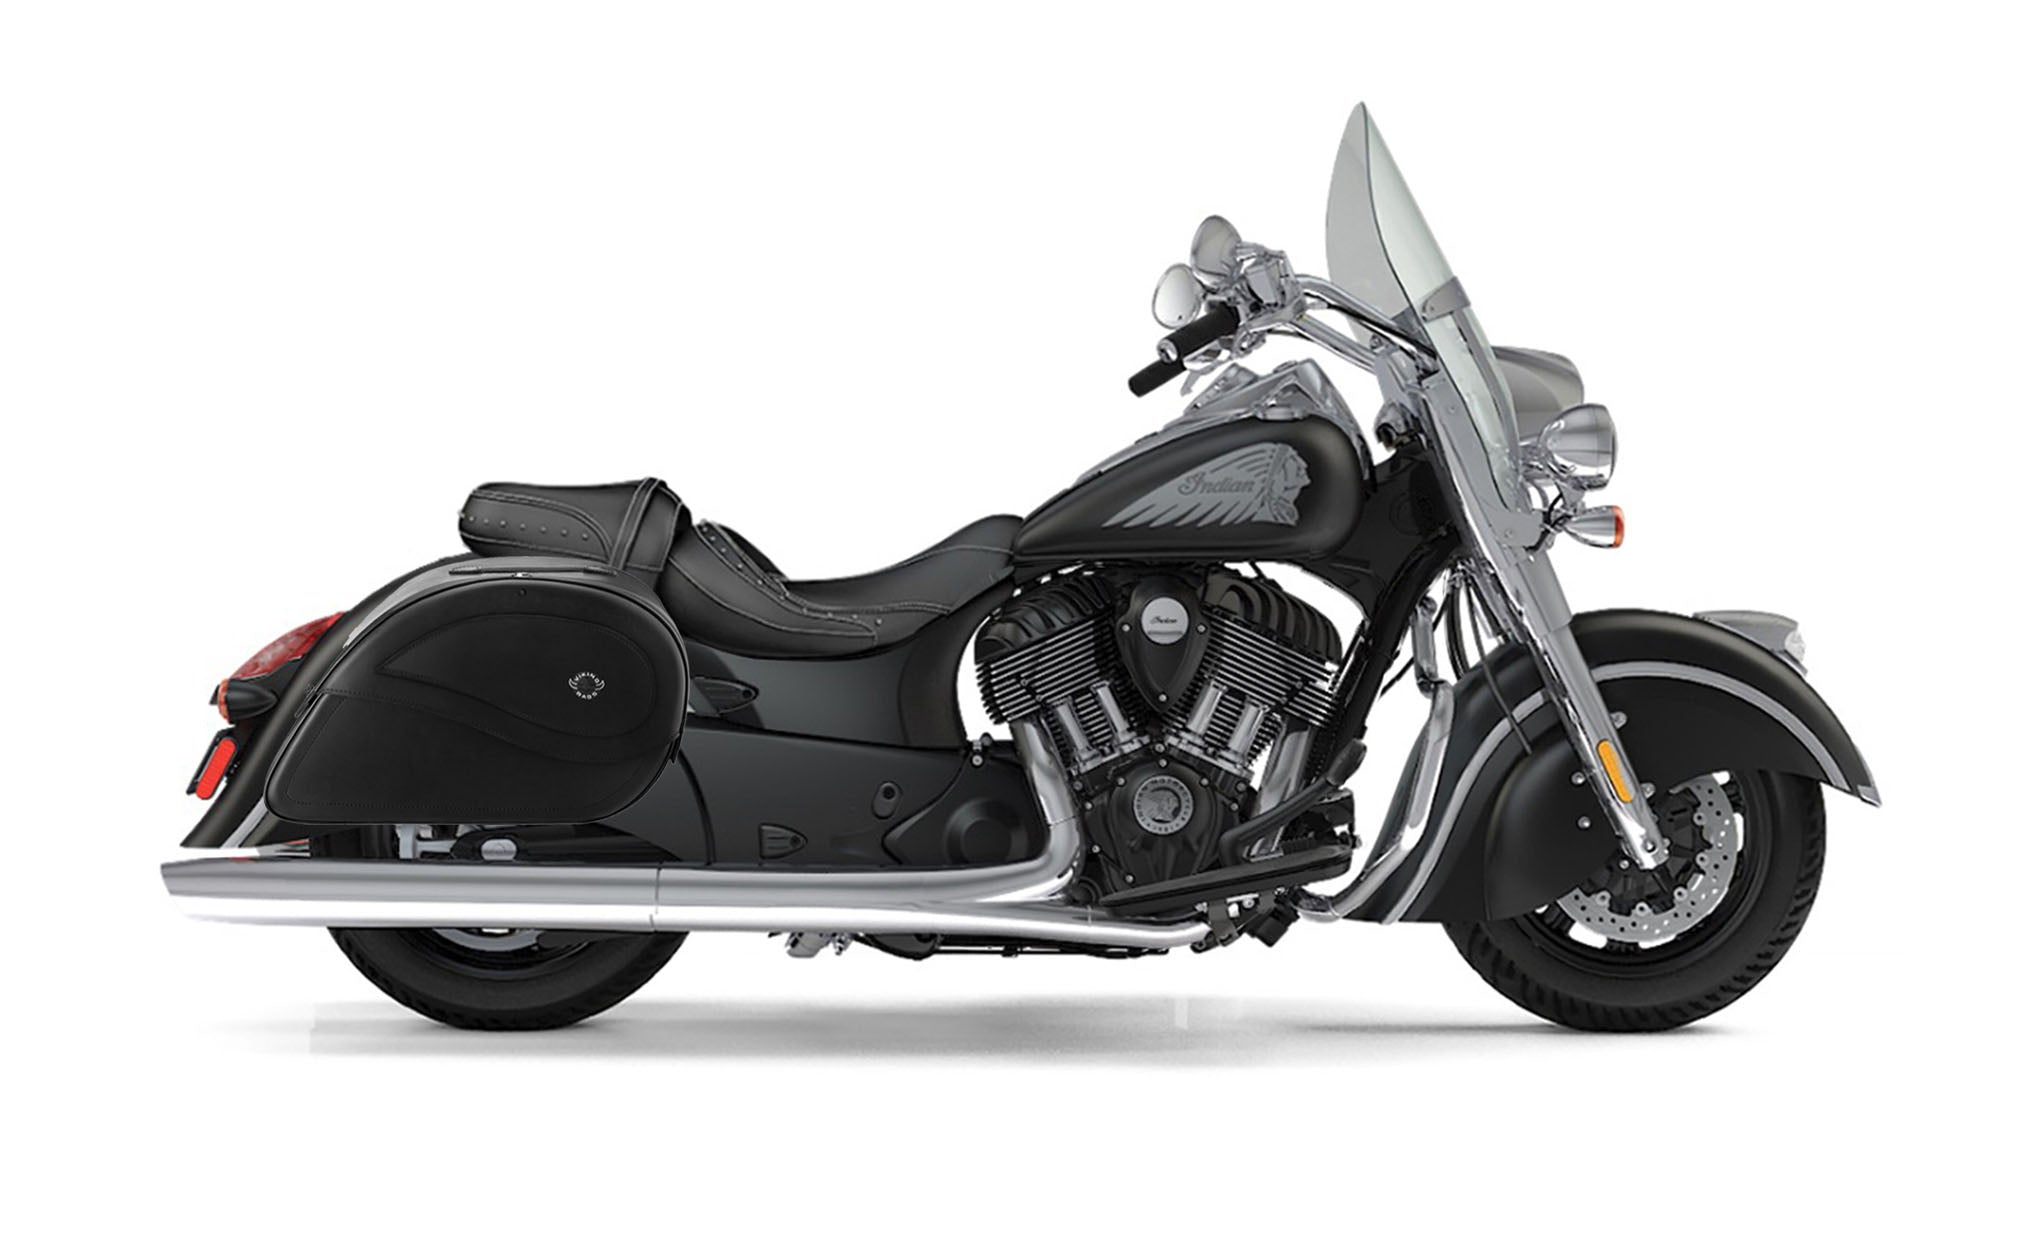 Viking Ultimate Large Indian Springfield Leather Motorcycle Saddlebags on Bike Photo @expand